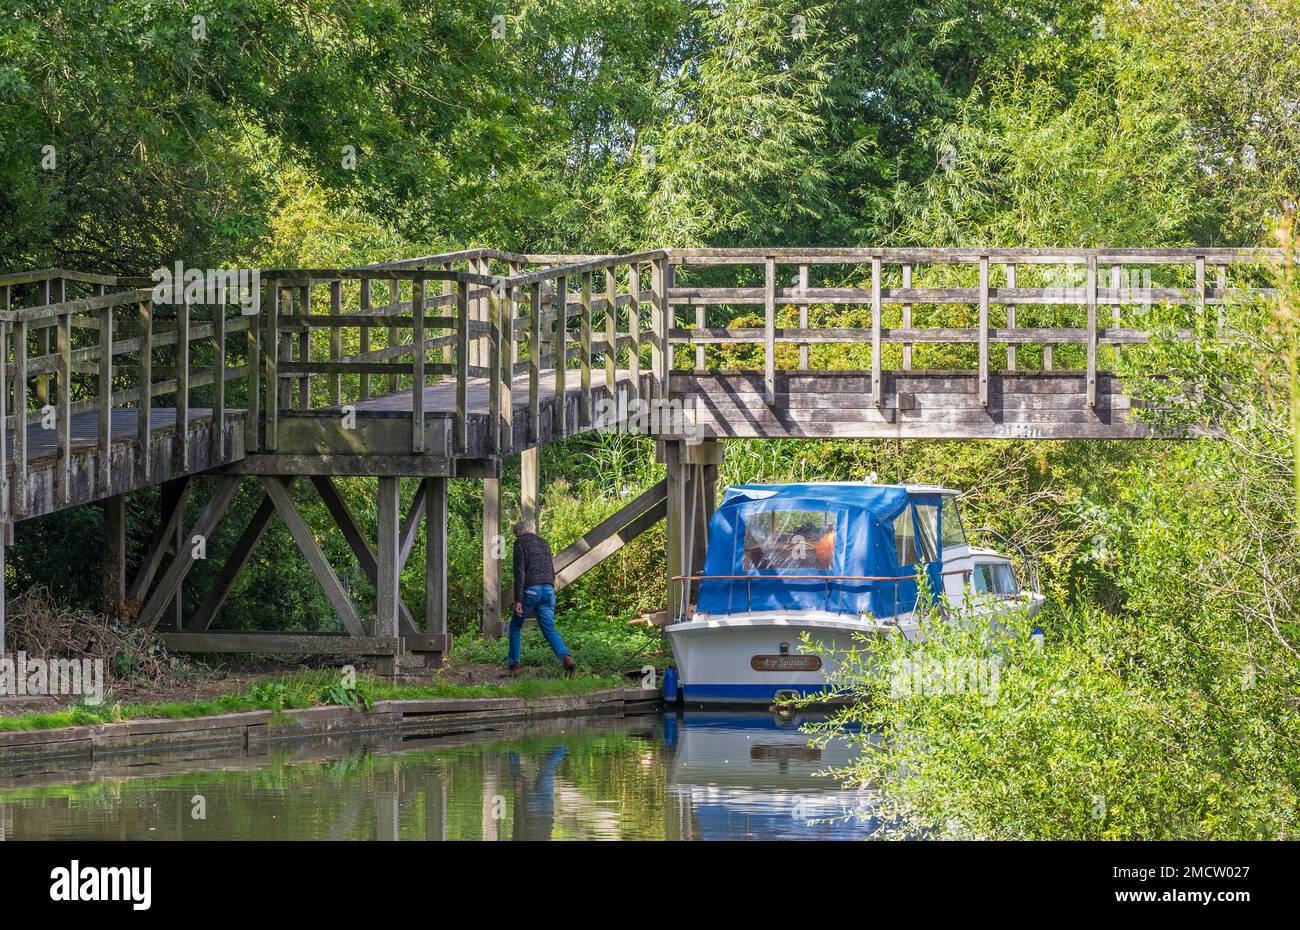 Heading Into the Woods, Canal, Newbury, Berkshire, UK Stock Photo